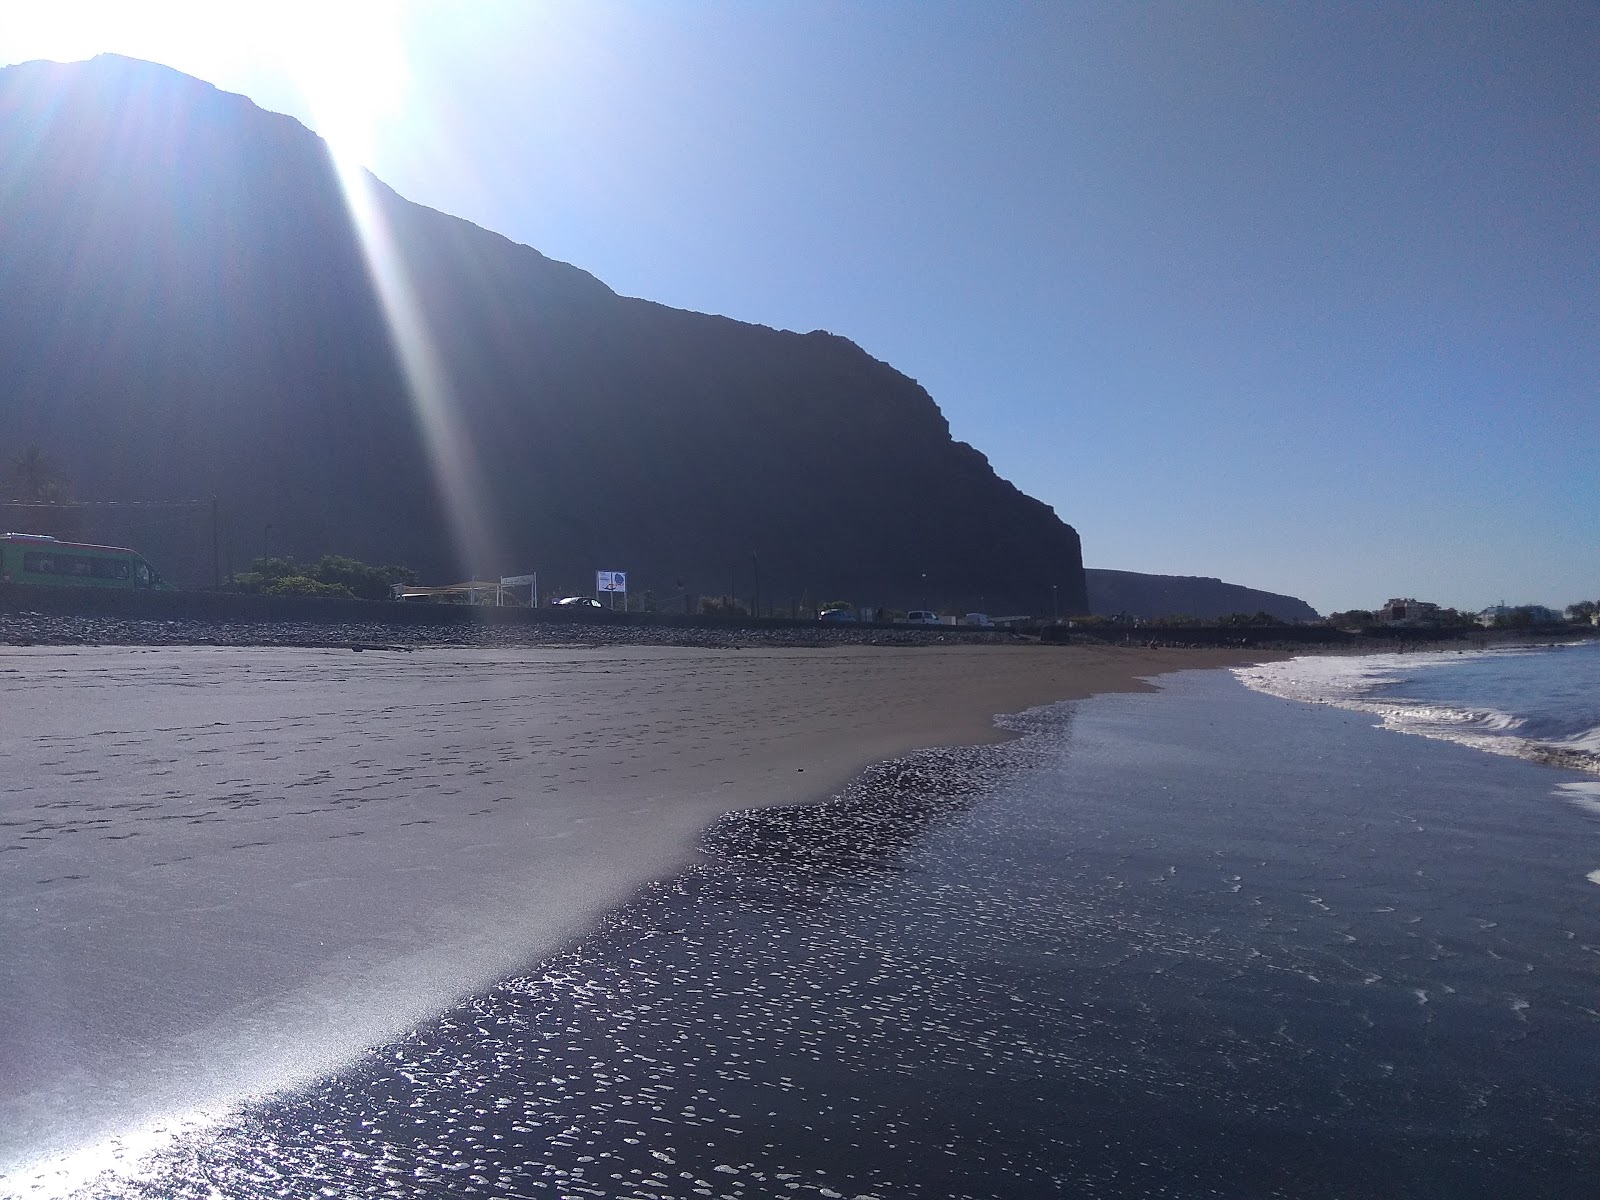 La Puntilla'in fotoğrafı gri kum yüzey ile